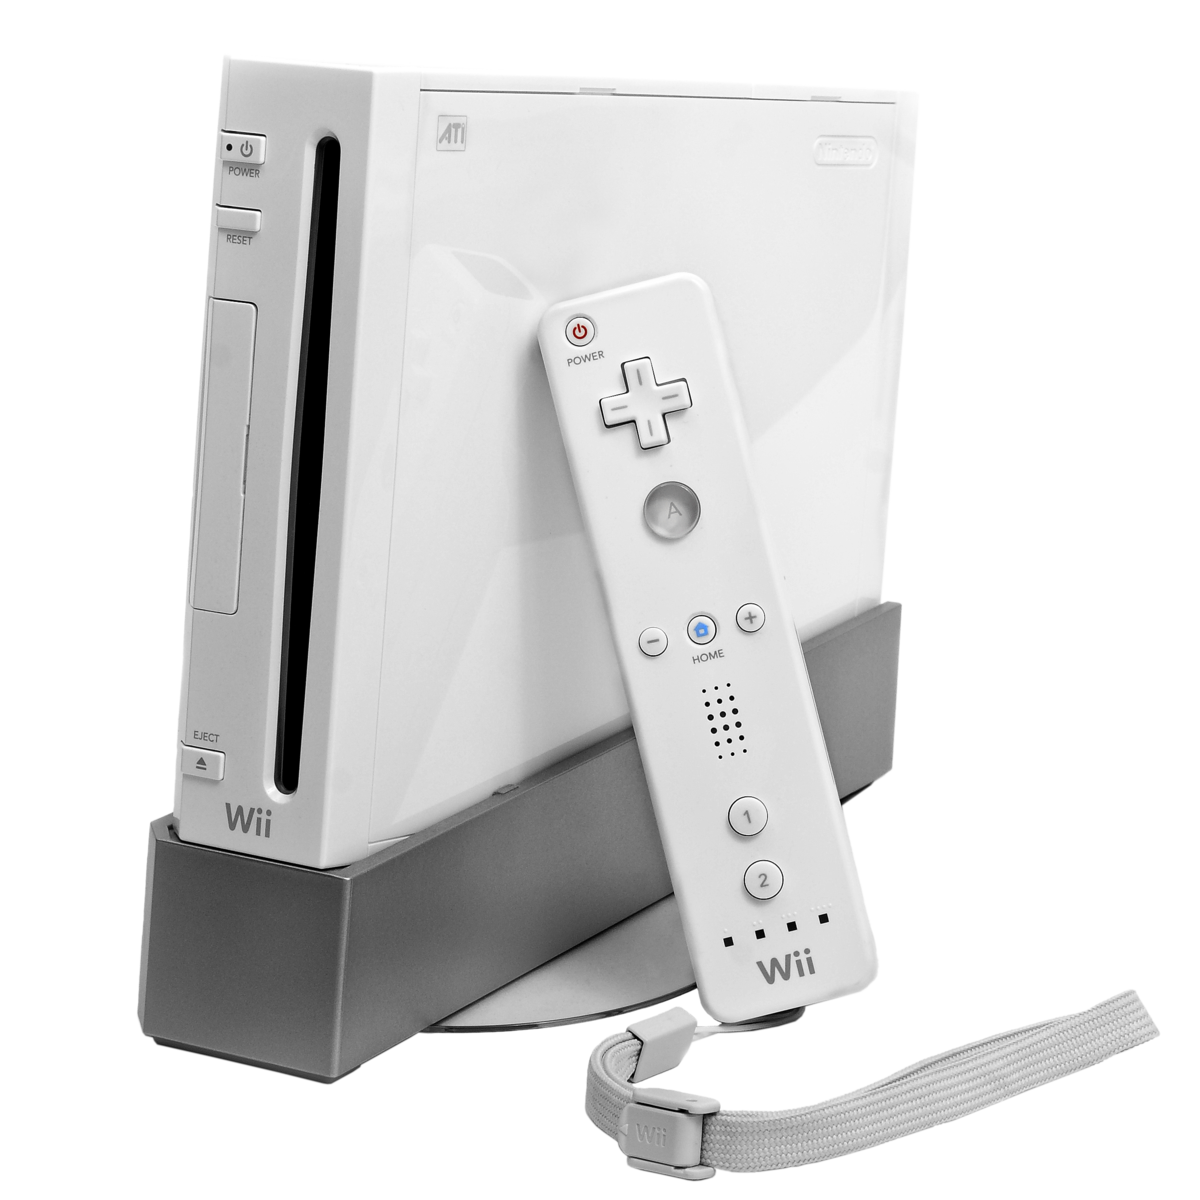  نینتندو ویل Nintendo Wii